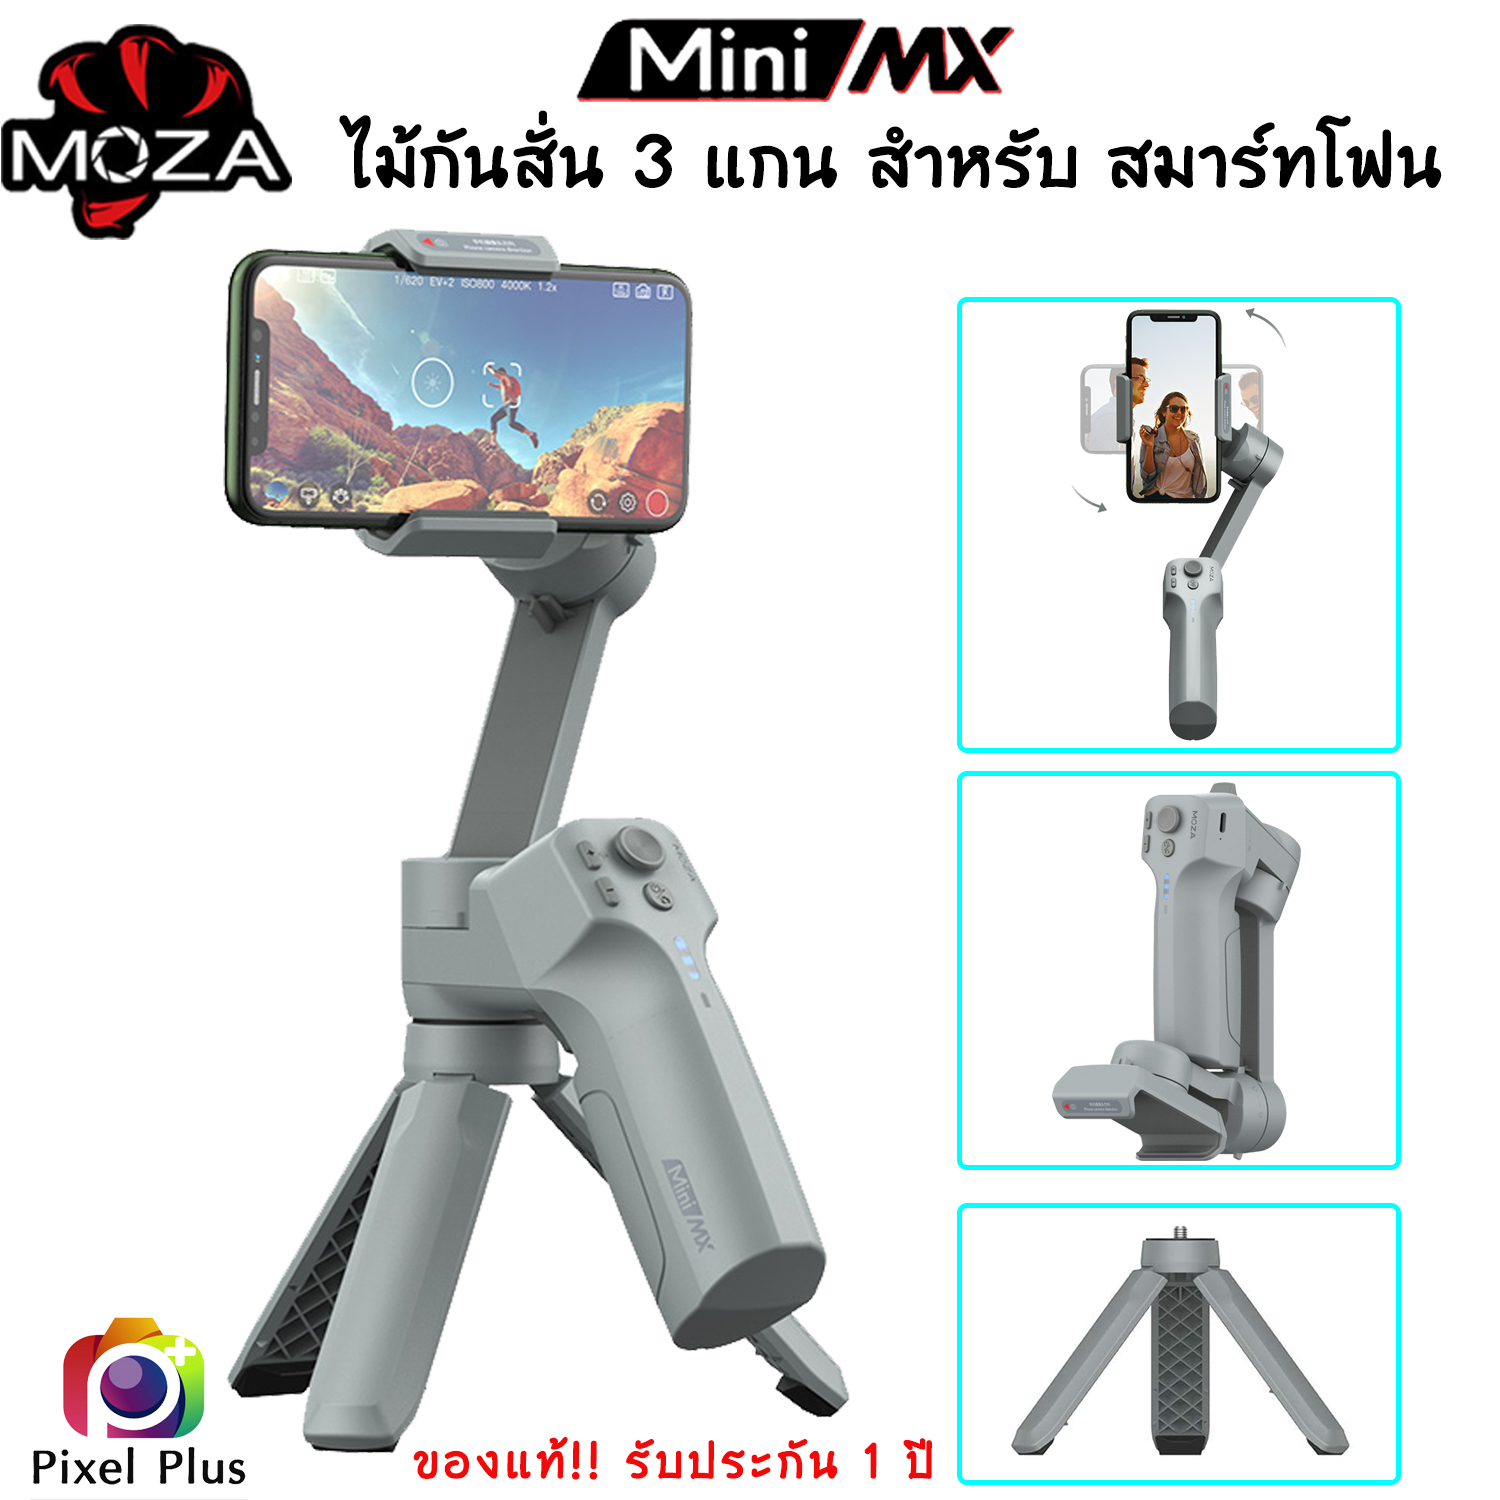 Moza Mini MX Gimbal ไม้กันสั่น 3 แกน สำหรับมือถือ ใช้ได้ทั้ง iphone และ andriod ของแท้ รับประกัน 1 ป